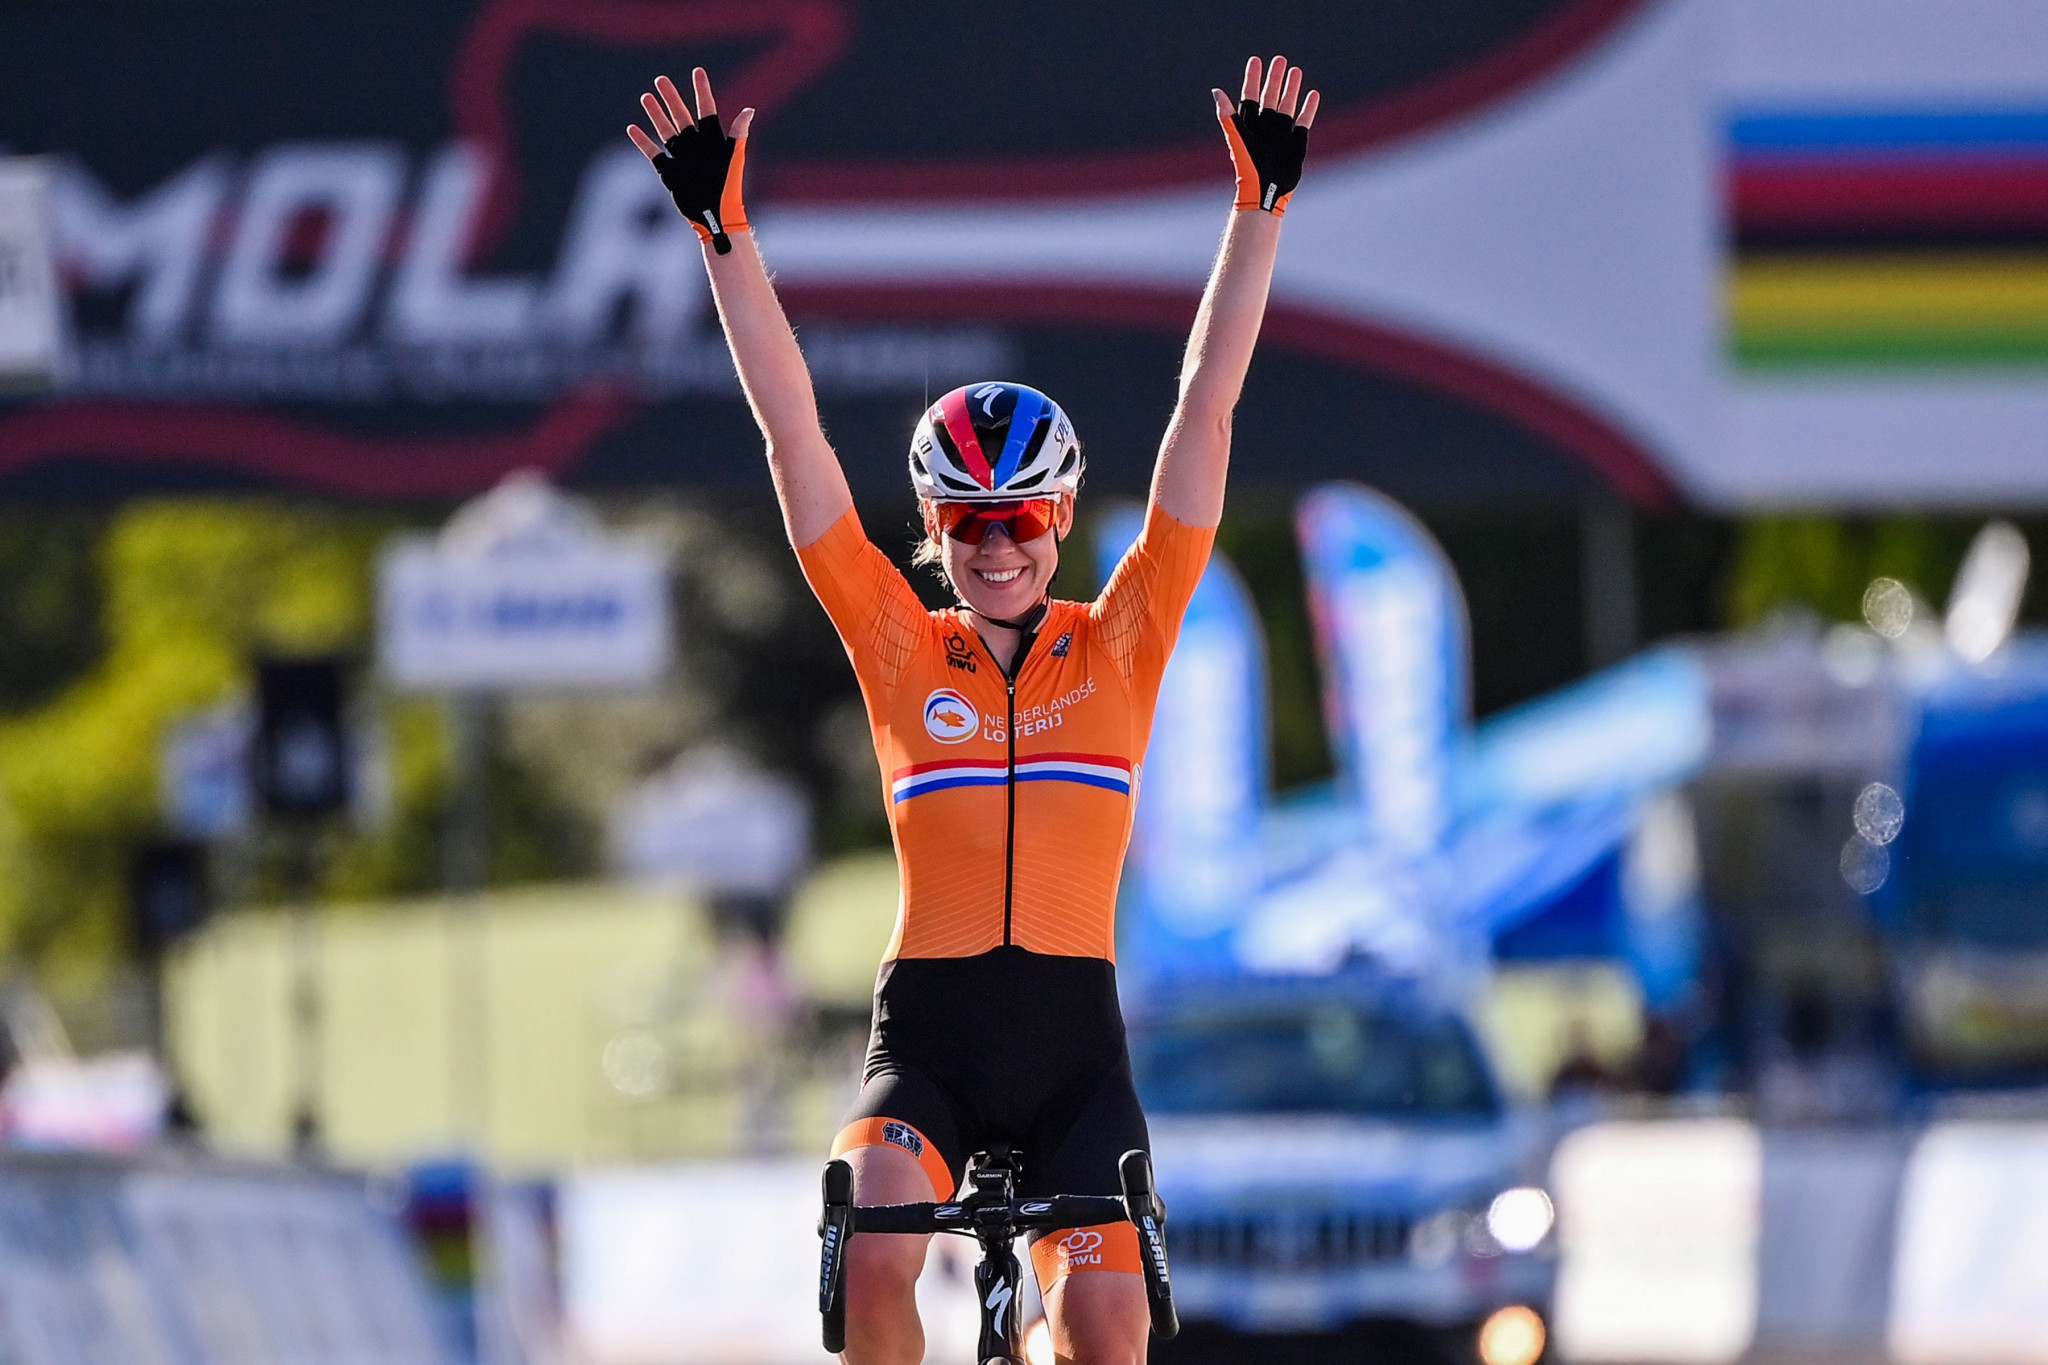 Anna van der Breggen is set to compete at the Vuelta a Burgos Feminas ©Getty Images